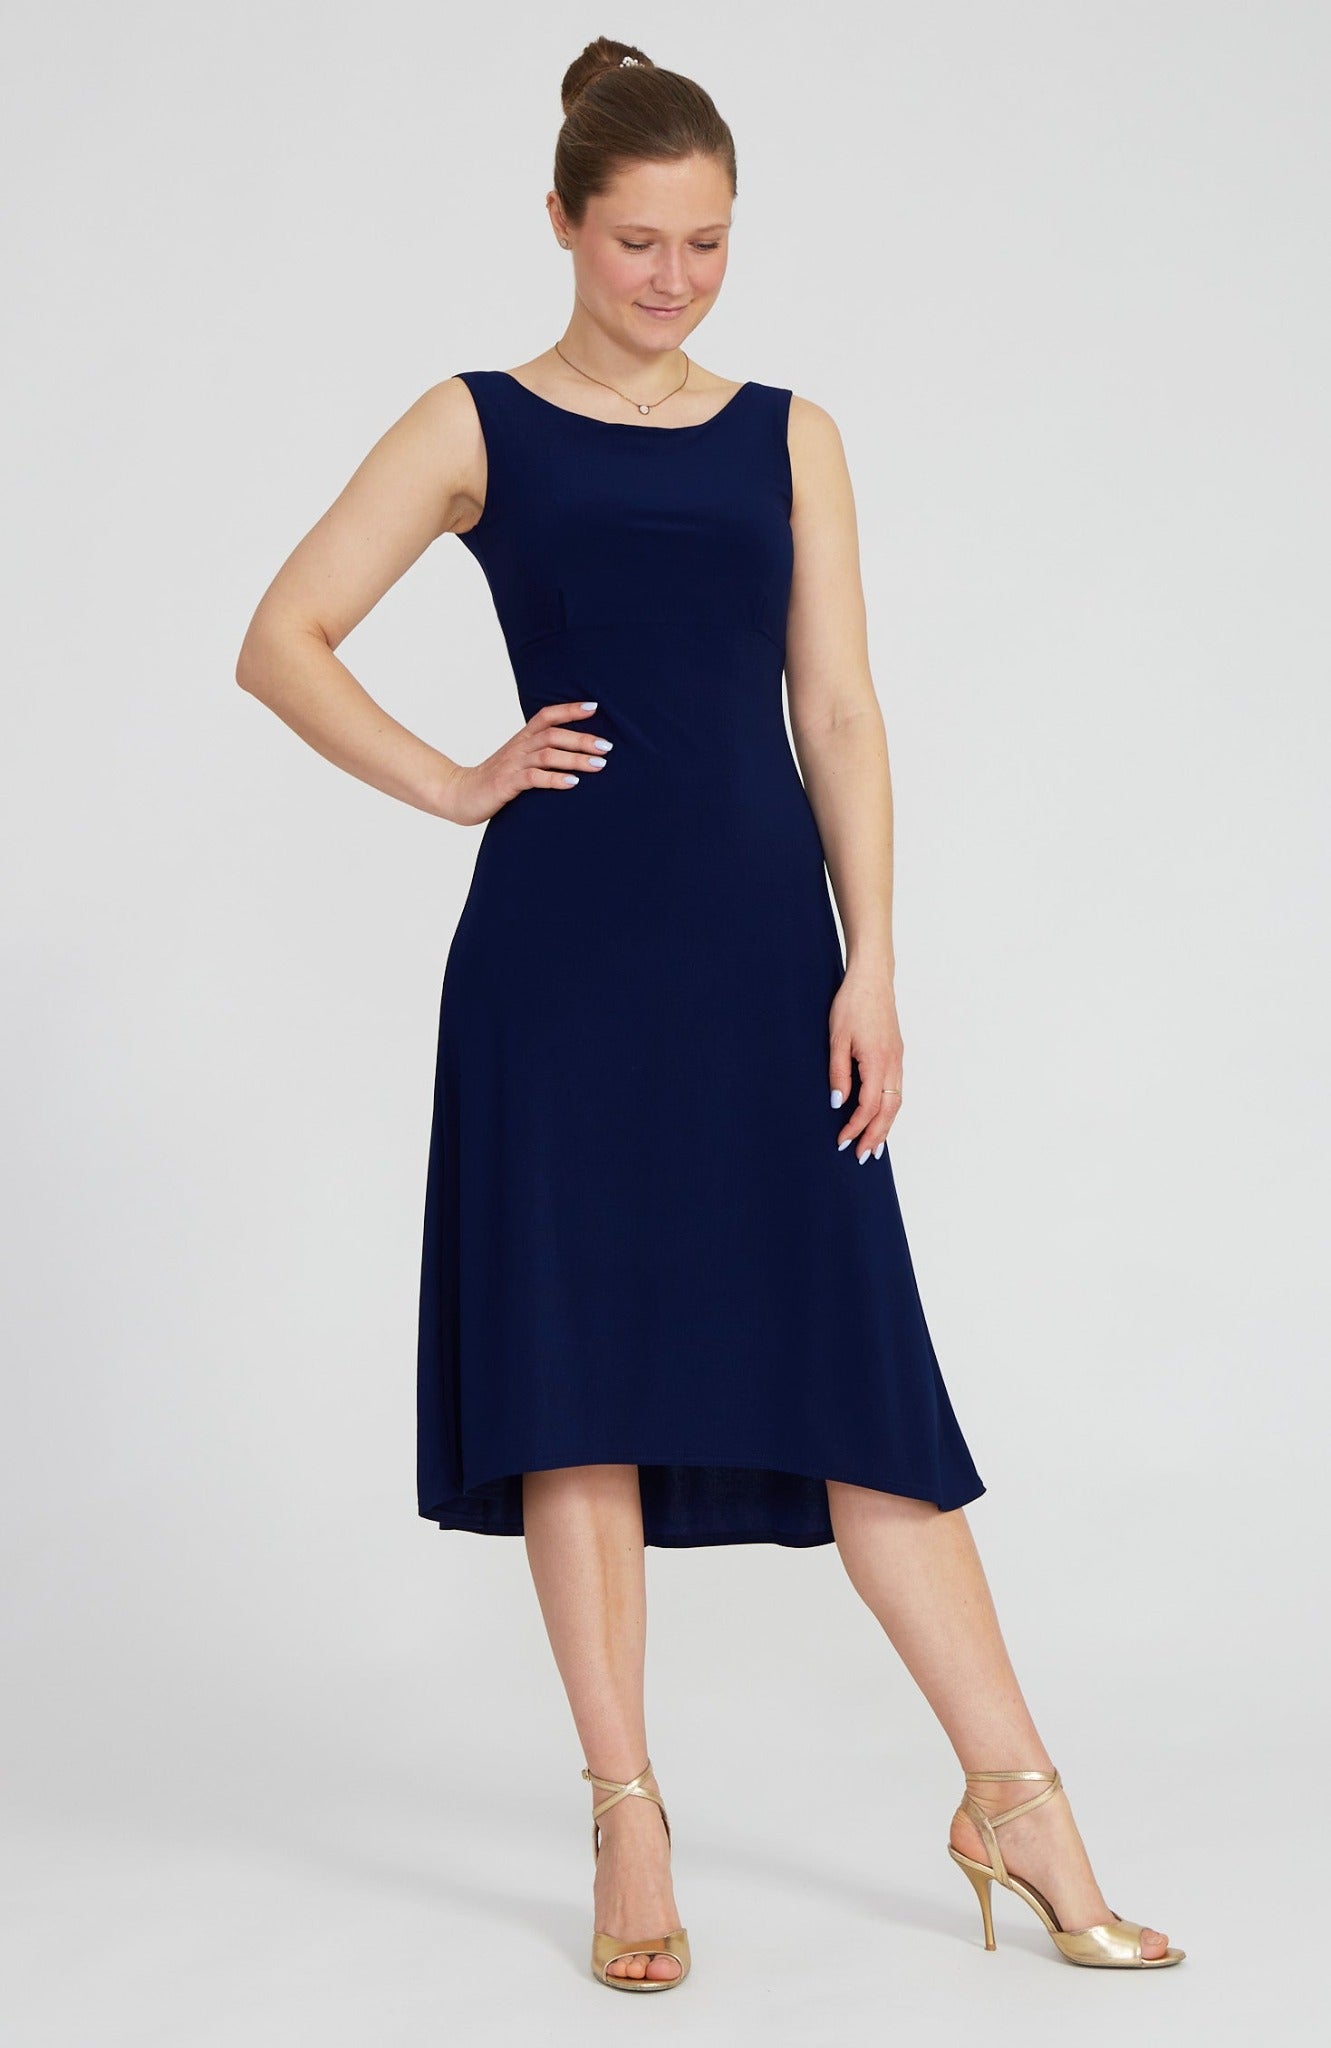 NOELIA - A-Line Tango Dress in Navy Blue